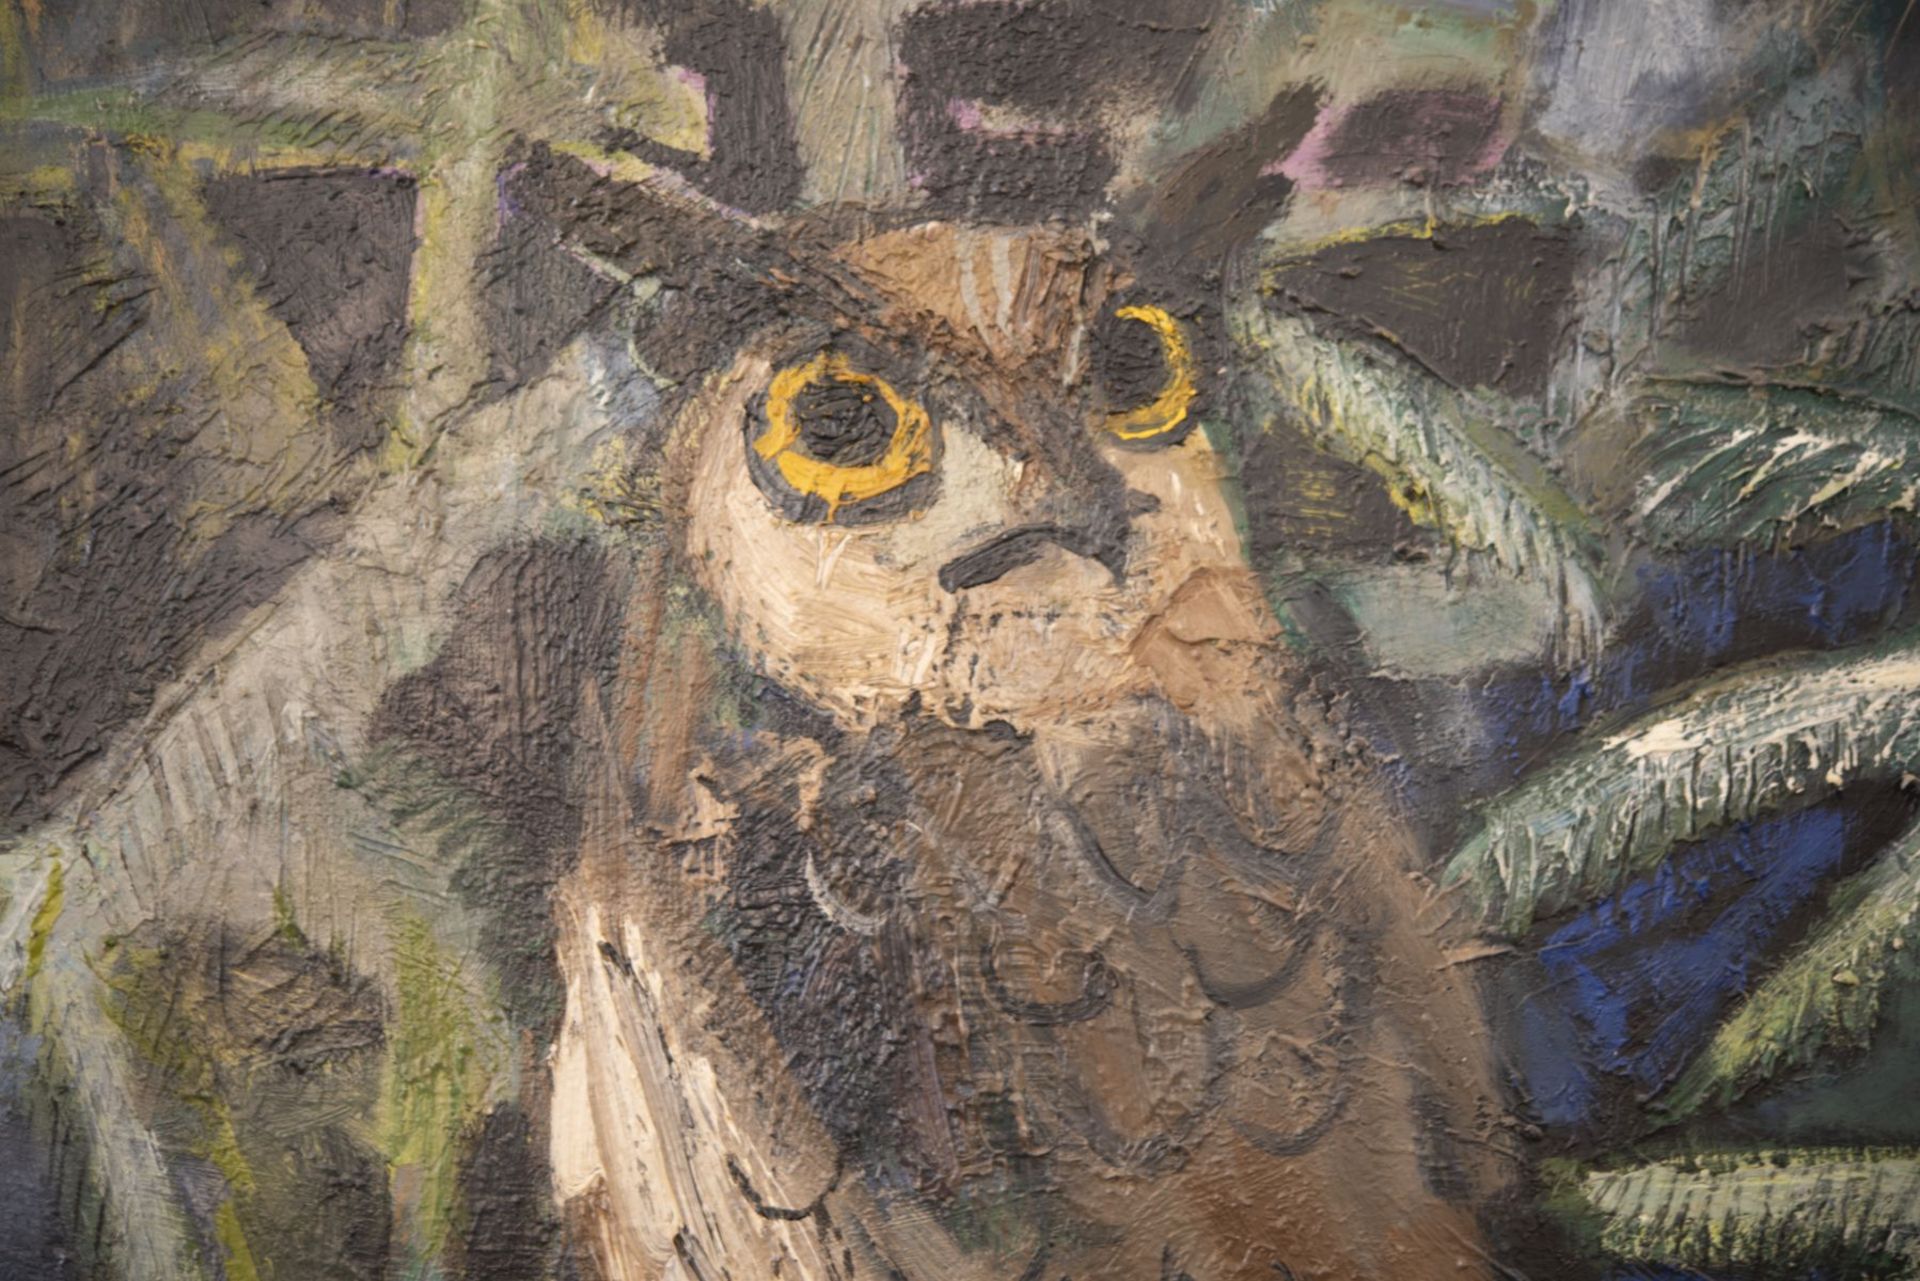 Franz Elsner (1898-1977), Owl in Spruce Branches | Franz Elsner (1898-1977), Eule im Fichtengeaest - Bild 2 aus 4